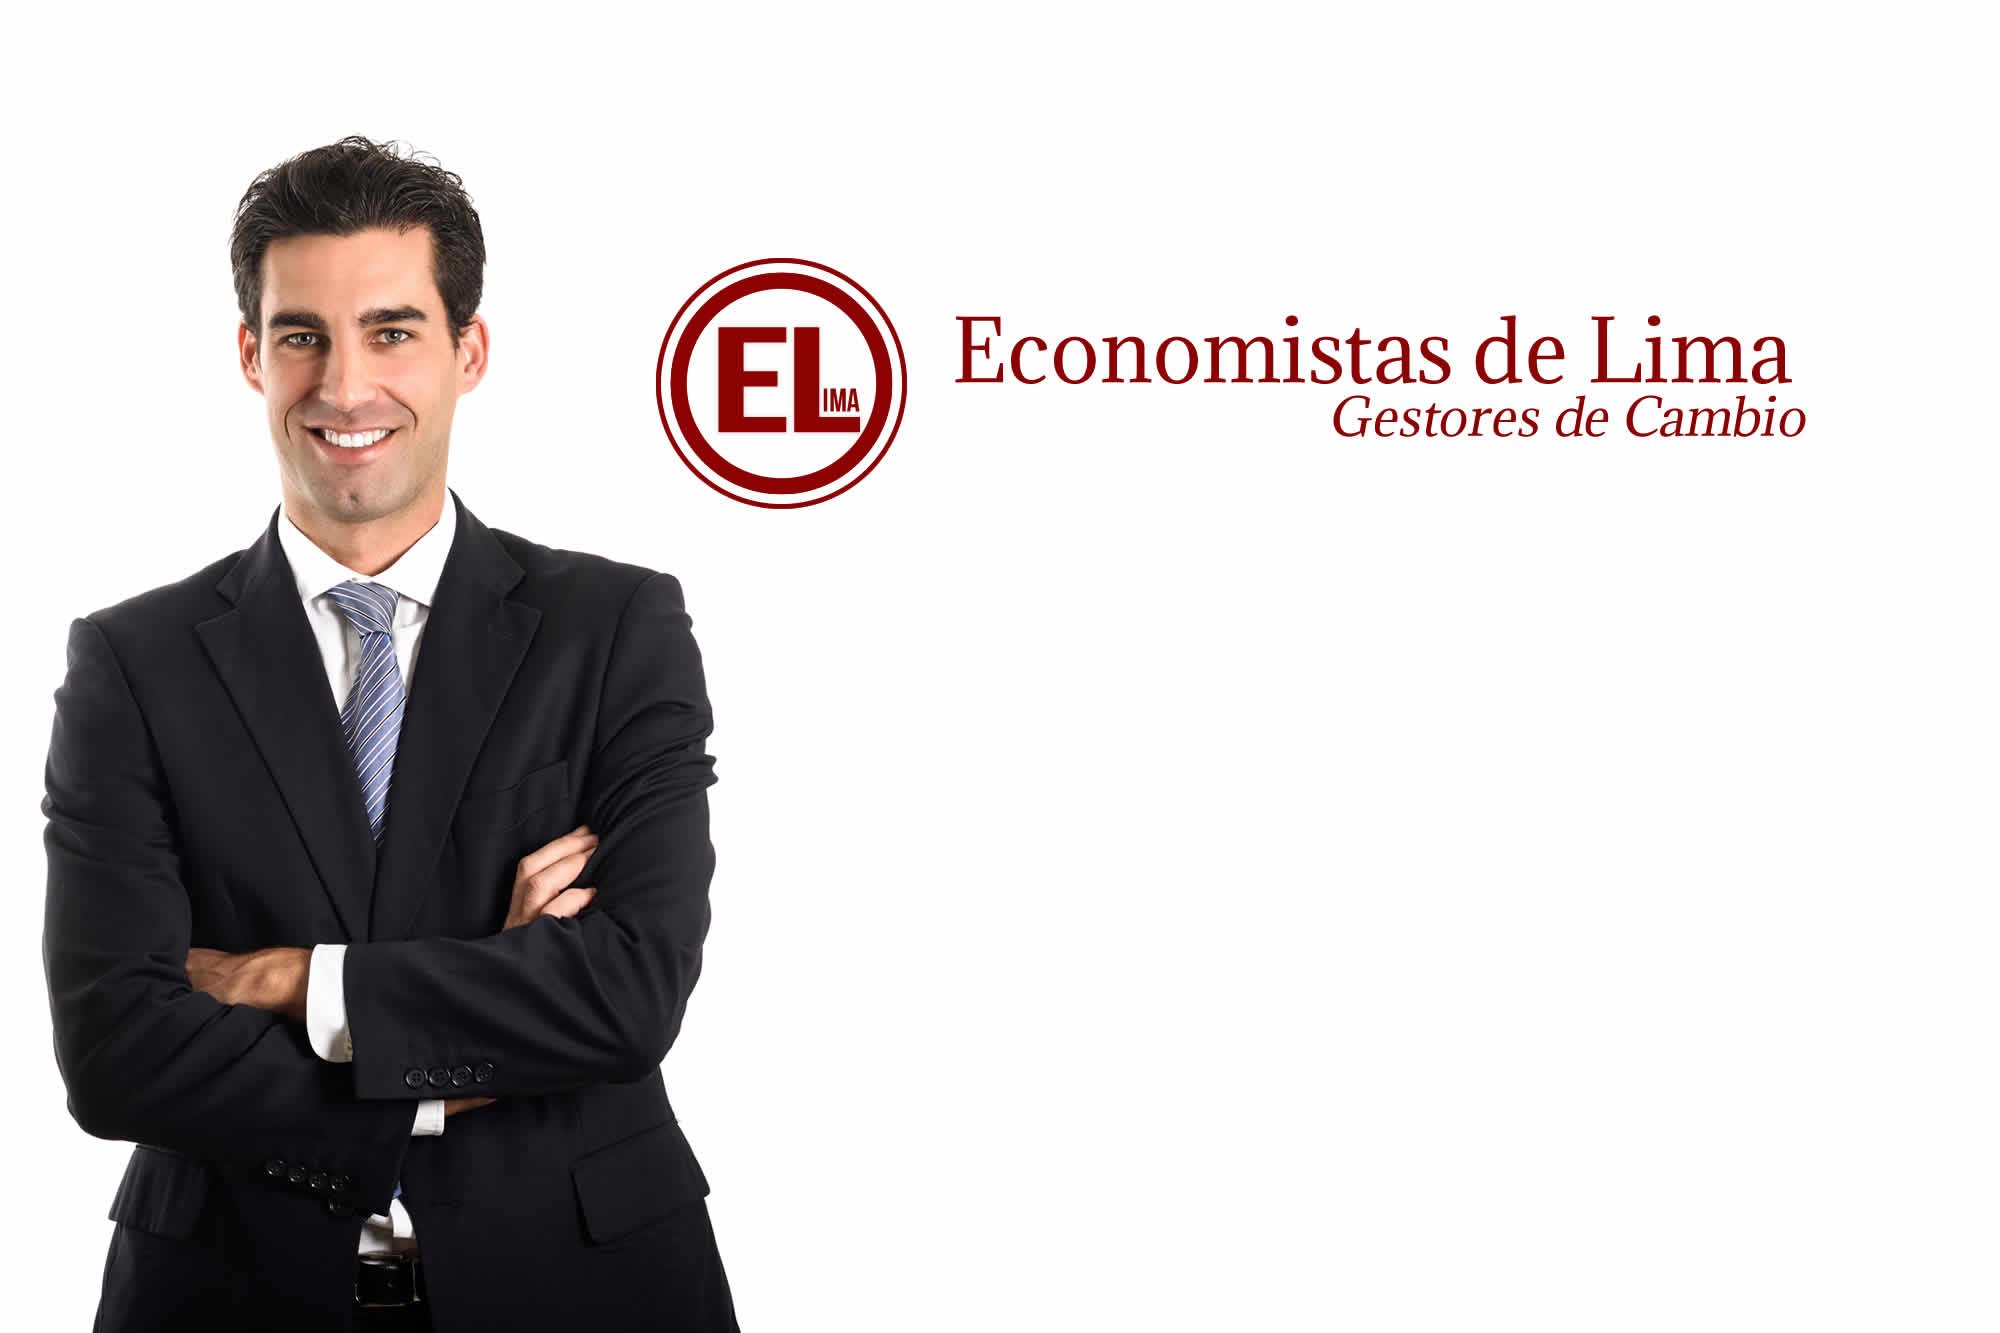 HERMES LLATAS CONSTRUCTORA | ECONOMISTAS DE LIMA